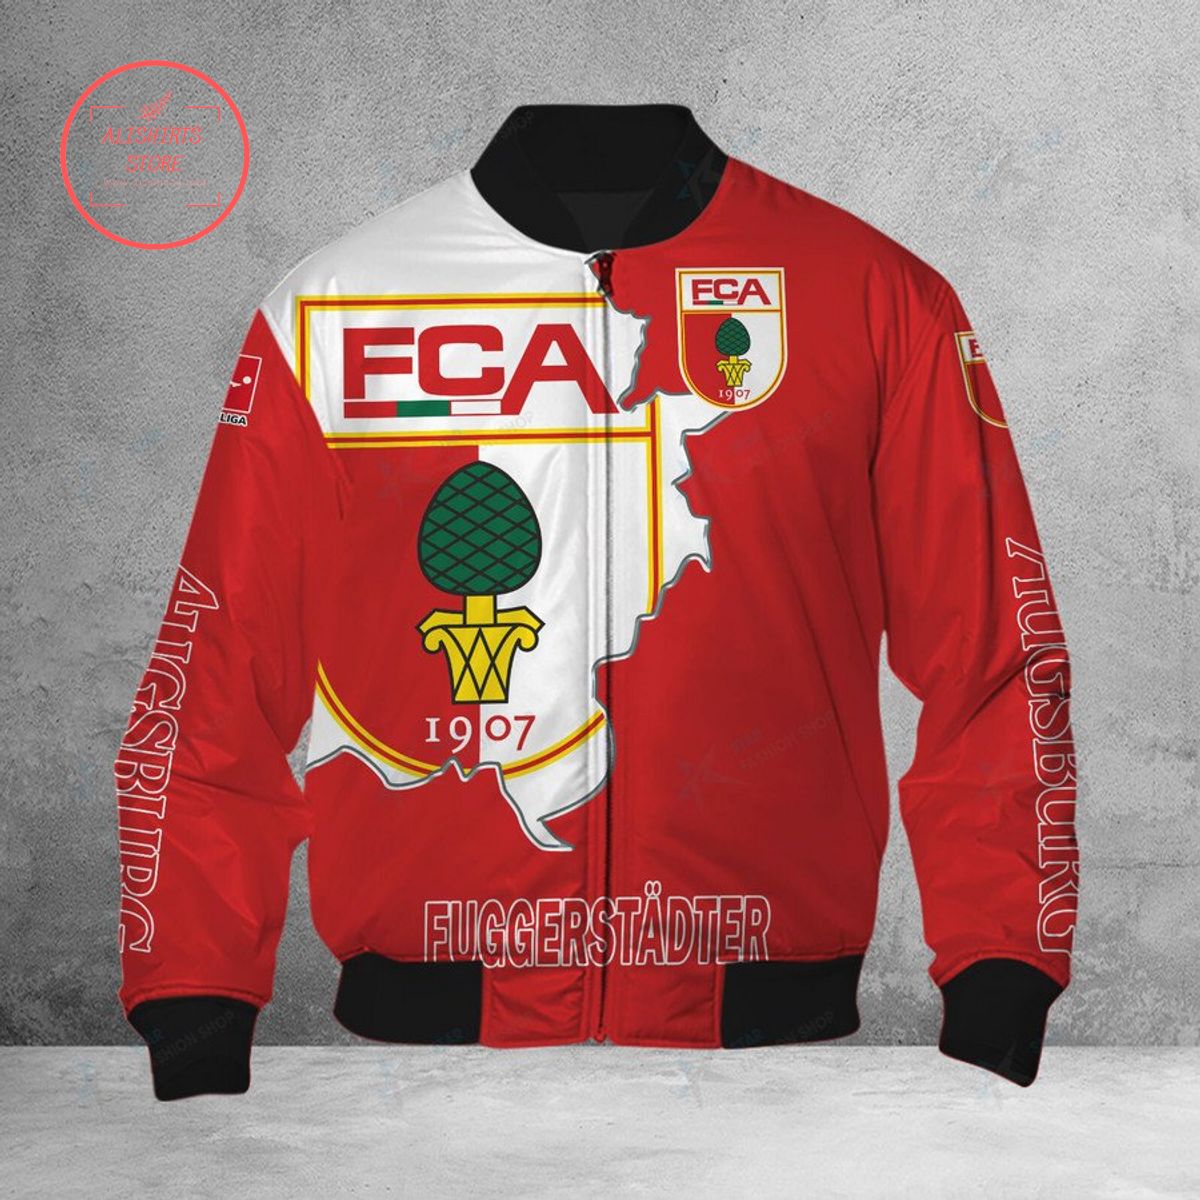 FC Augsburg Bomber Jacket